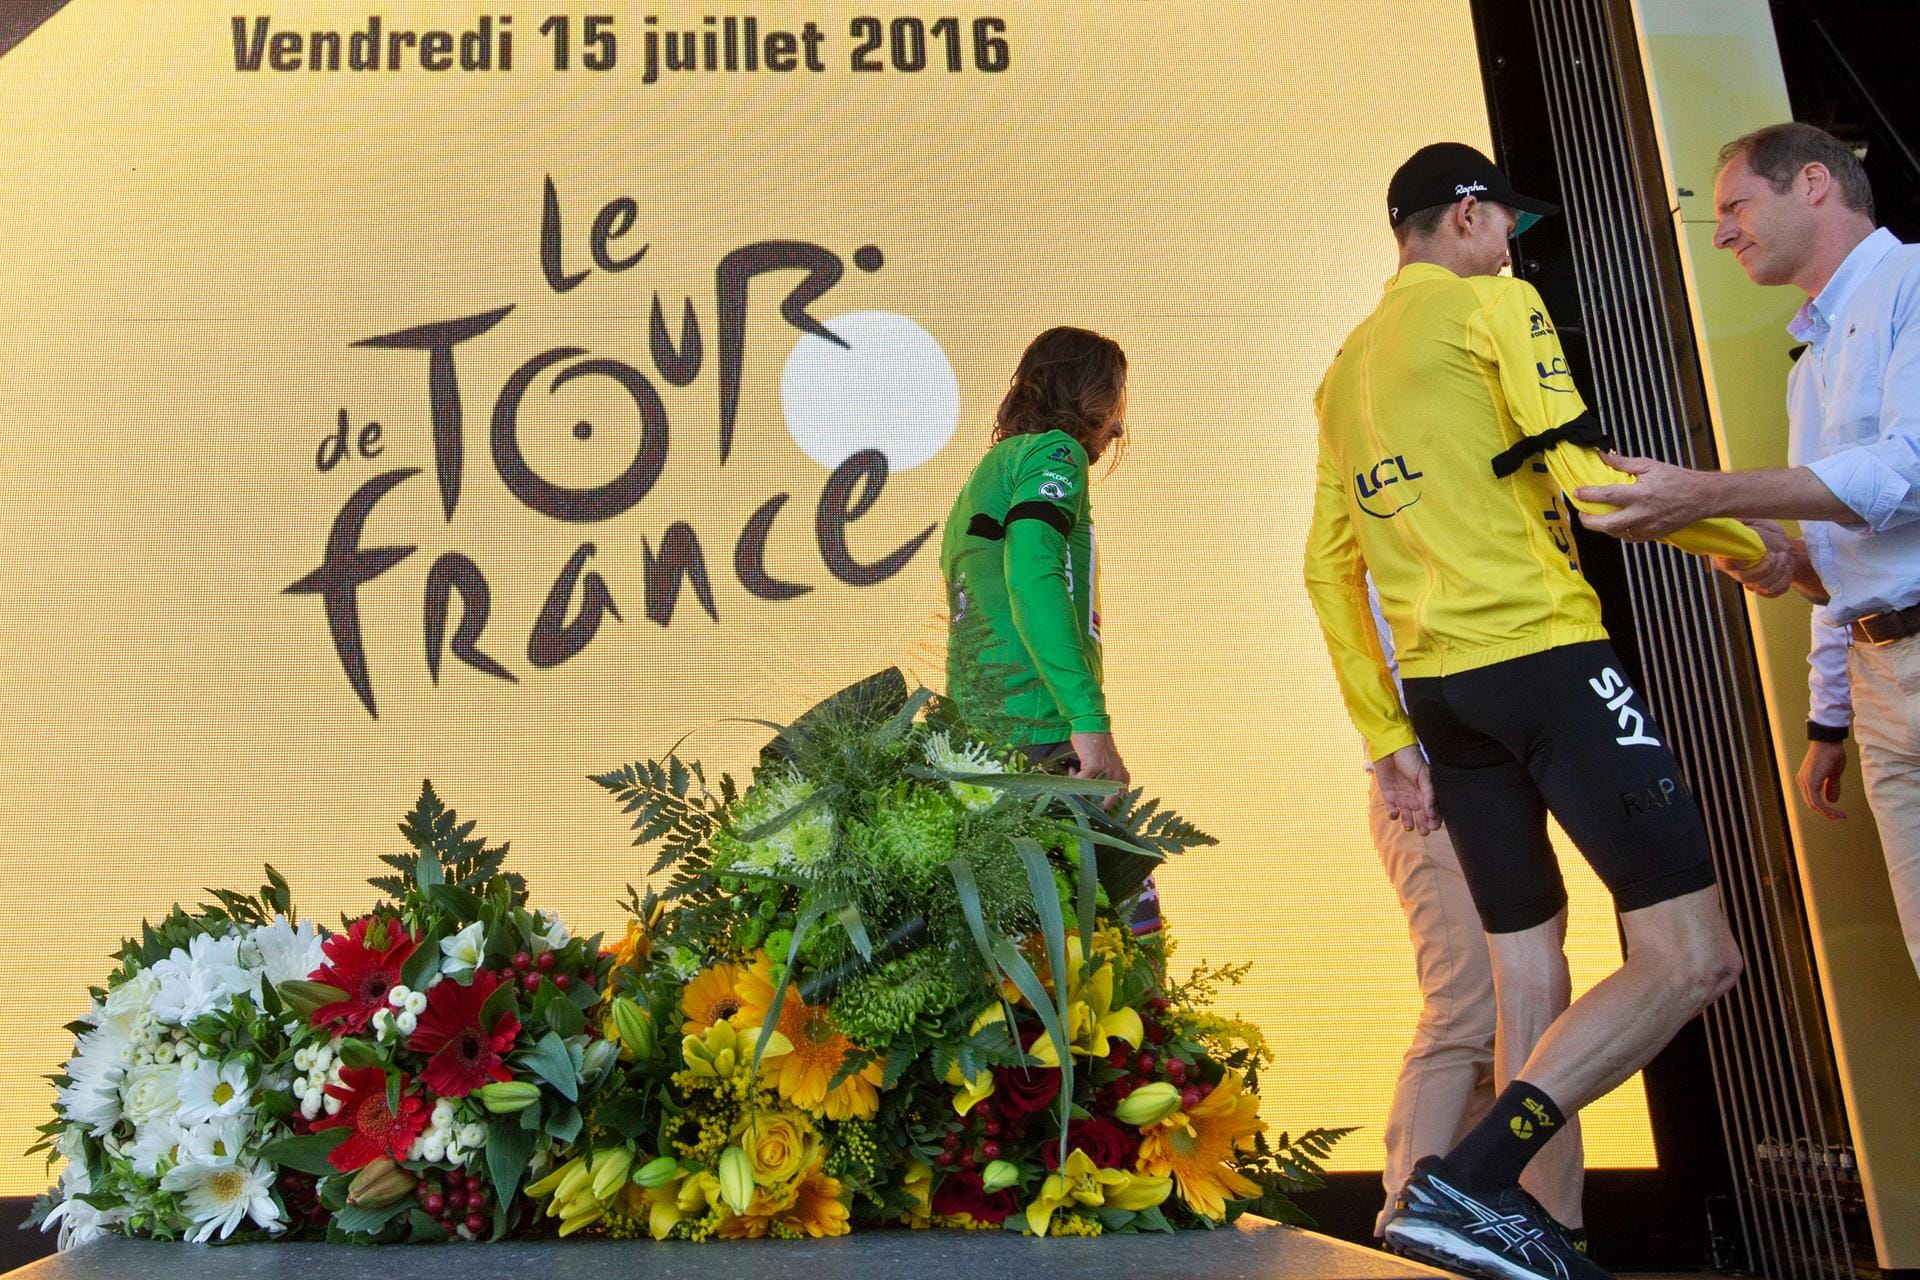 Stiller Abgang: Peter Sagan (Grünes Trikot) und Froome verlassen das Podium nach einer der wohl traurigsten Siegerehrungen in der Geschichte der Tour.